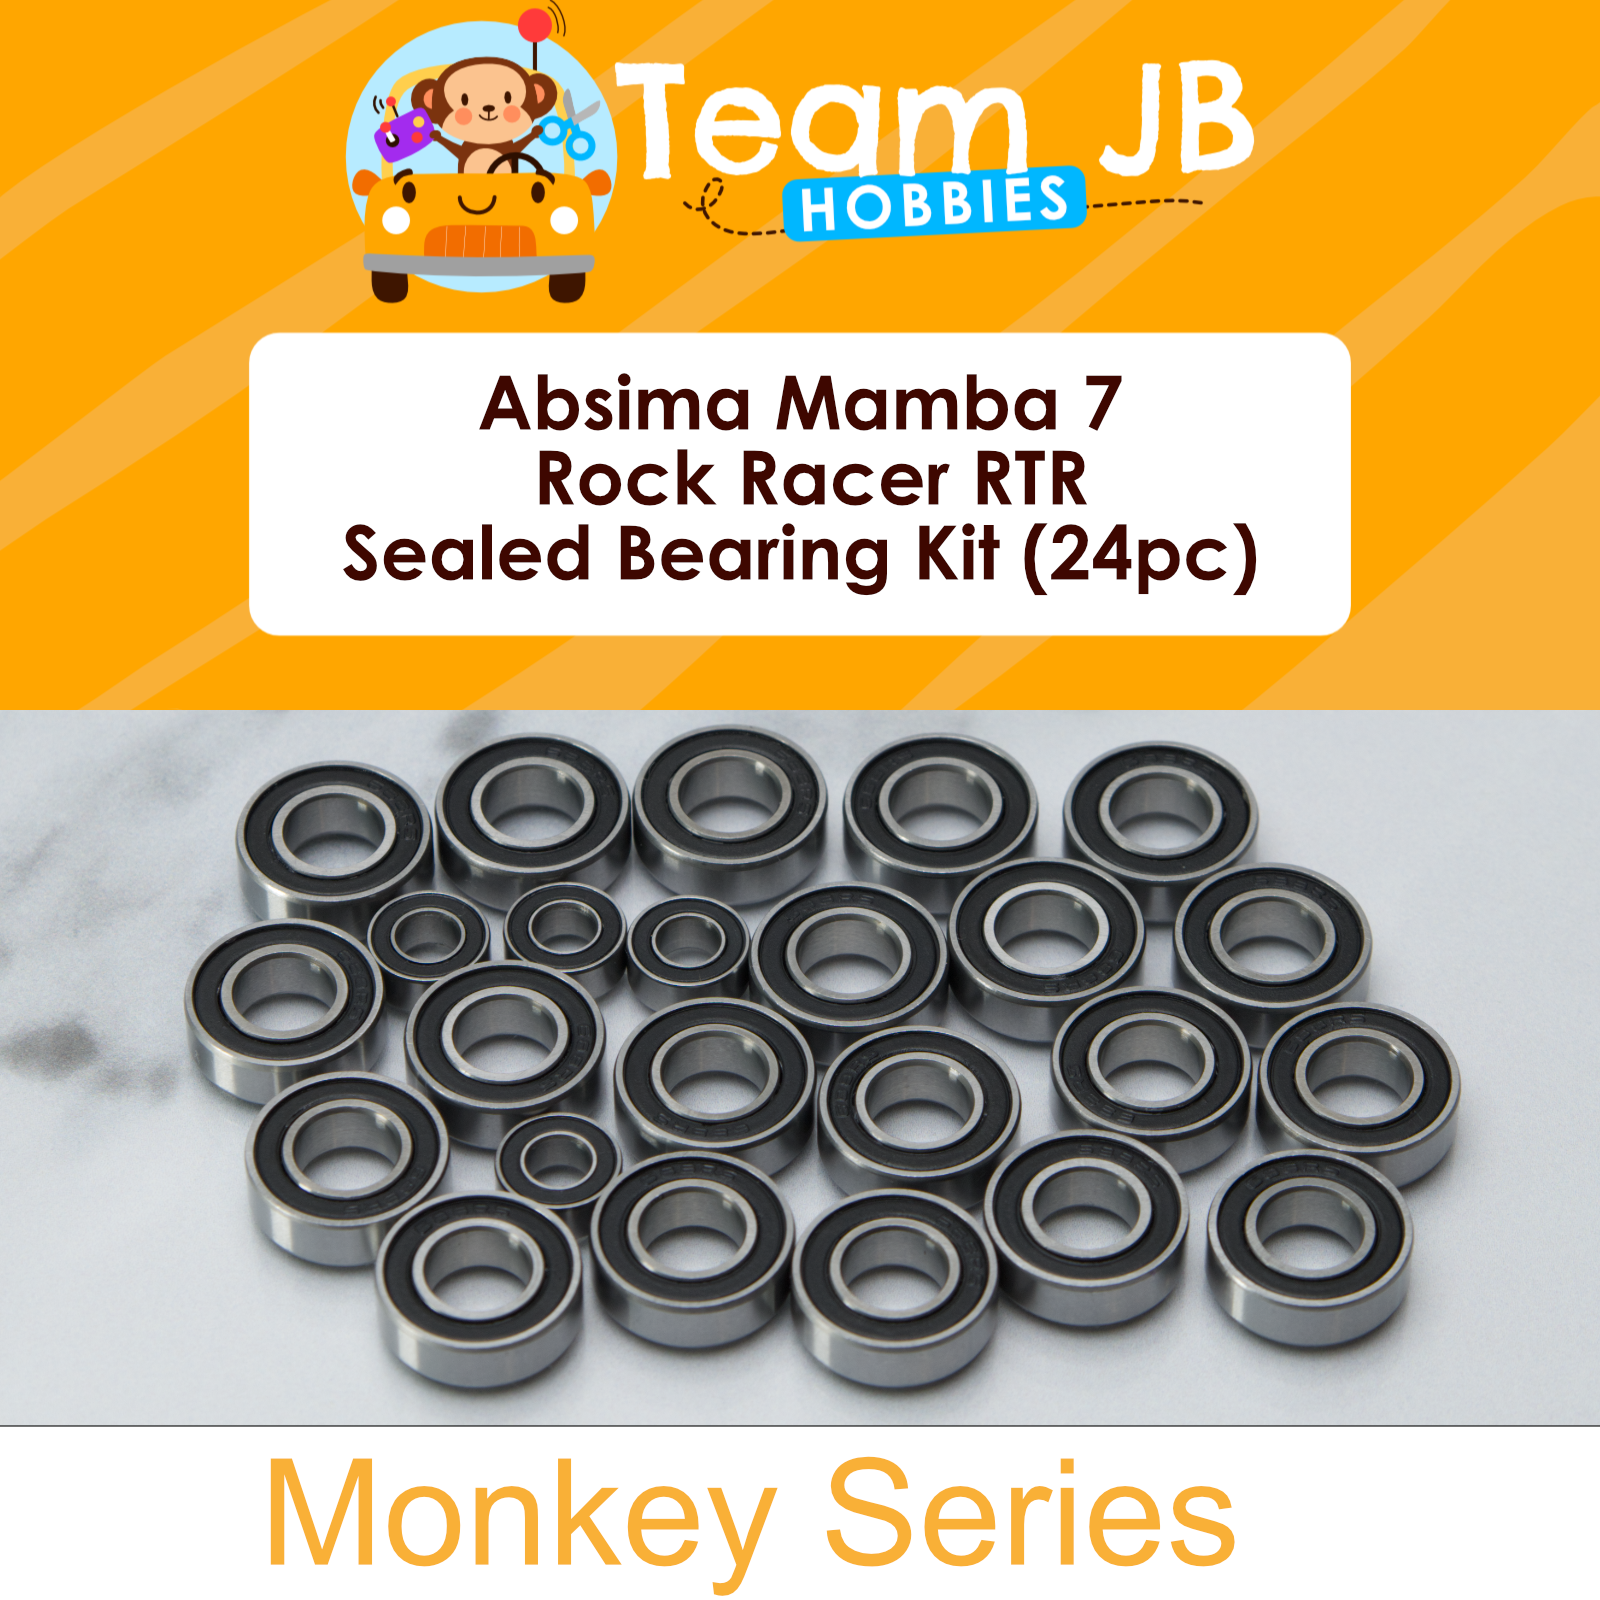 Absima Mamba 7 Rock Racer RTR - Sealed Bearing Kit